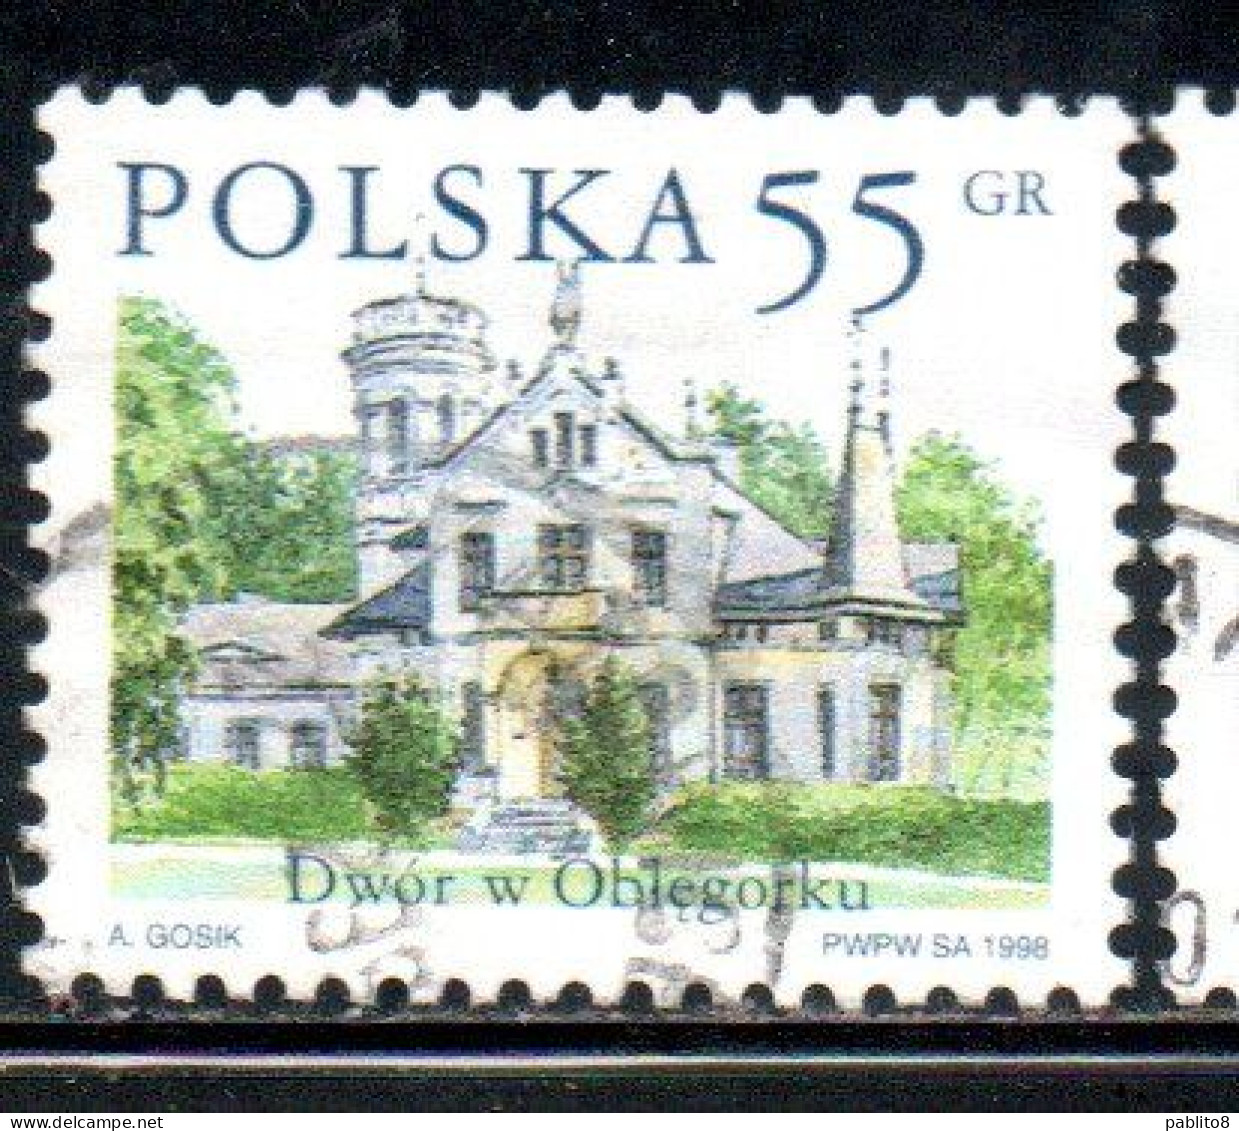 POLONIA POLAND POLSKA 1998 COUNTRY ESTATES OBLEGORKU 55g USED USATO OBLITERE' - Used Stamps